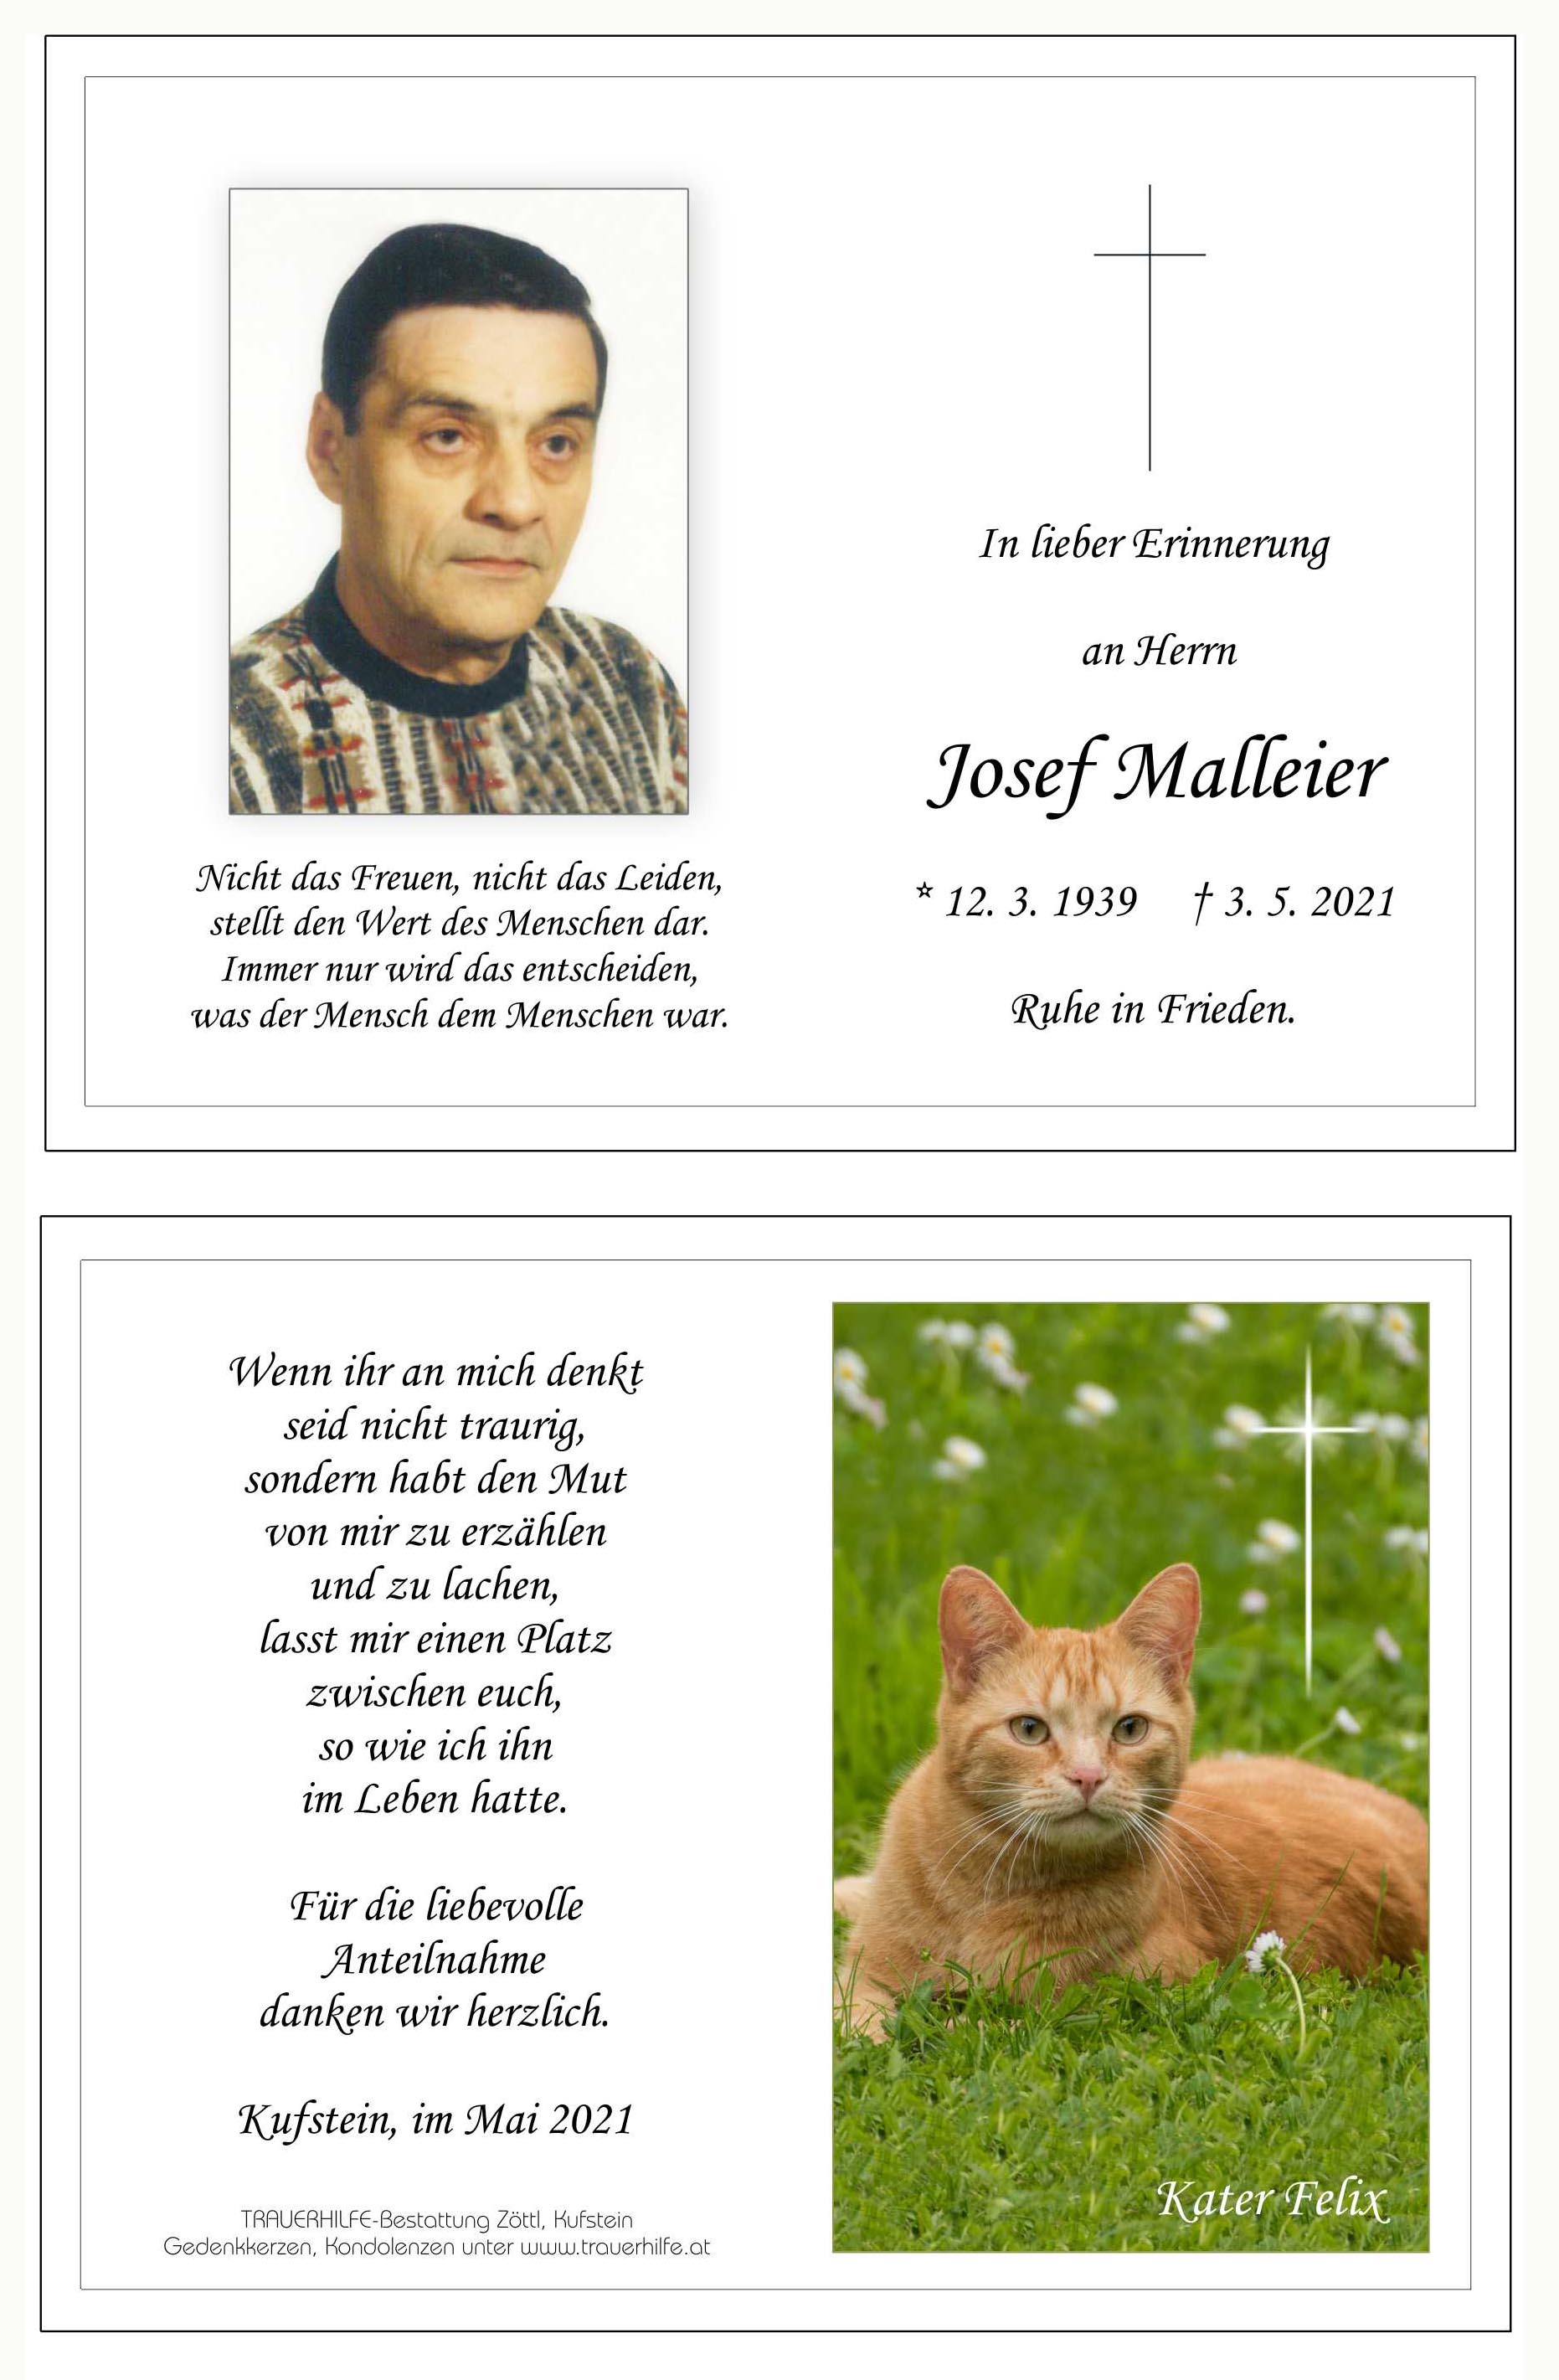 Josef Malleier